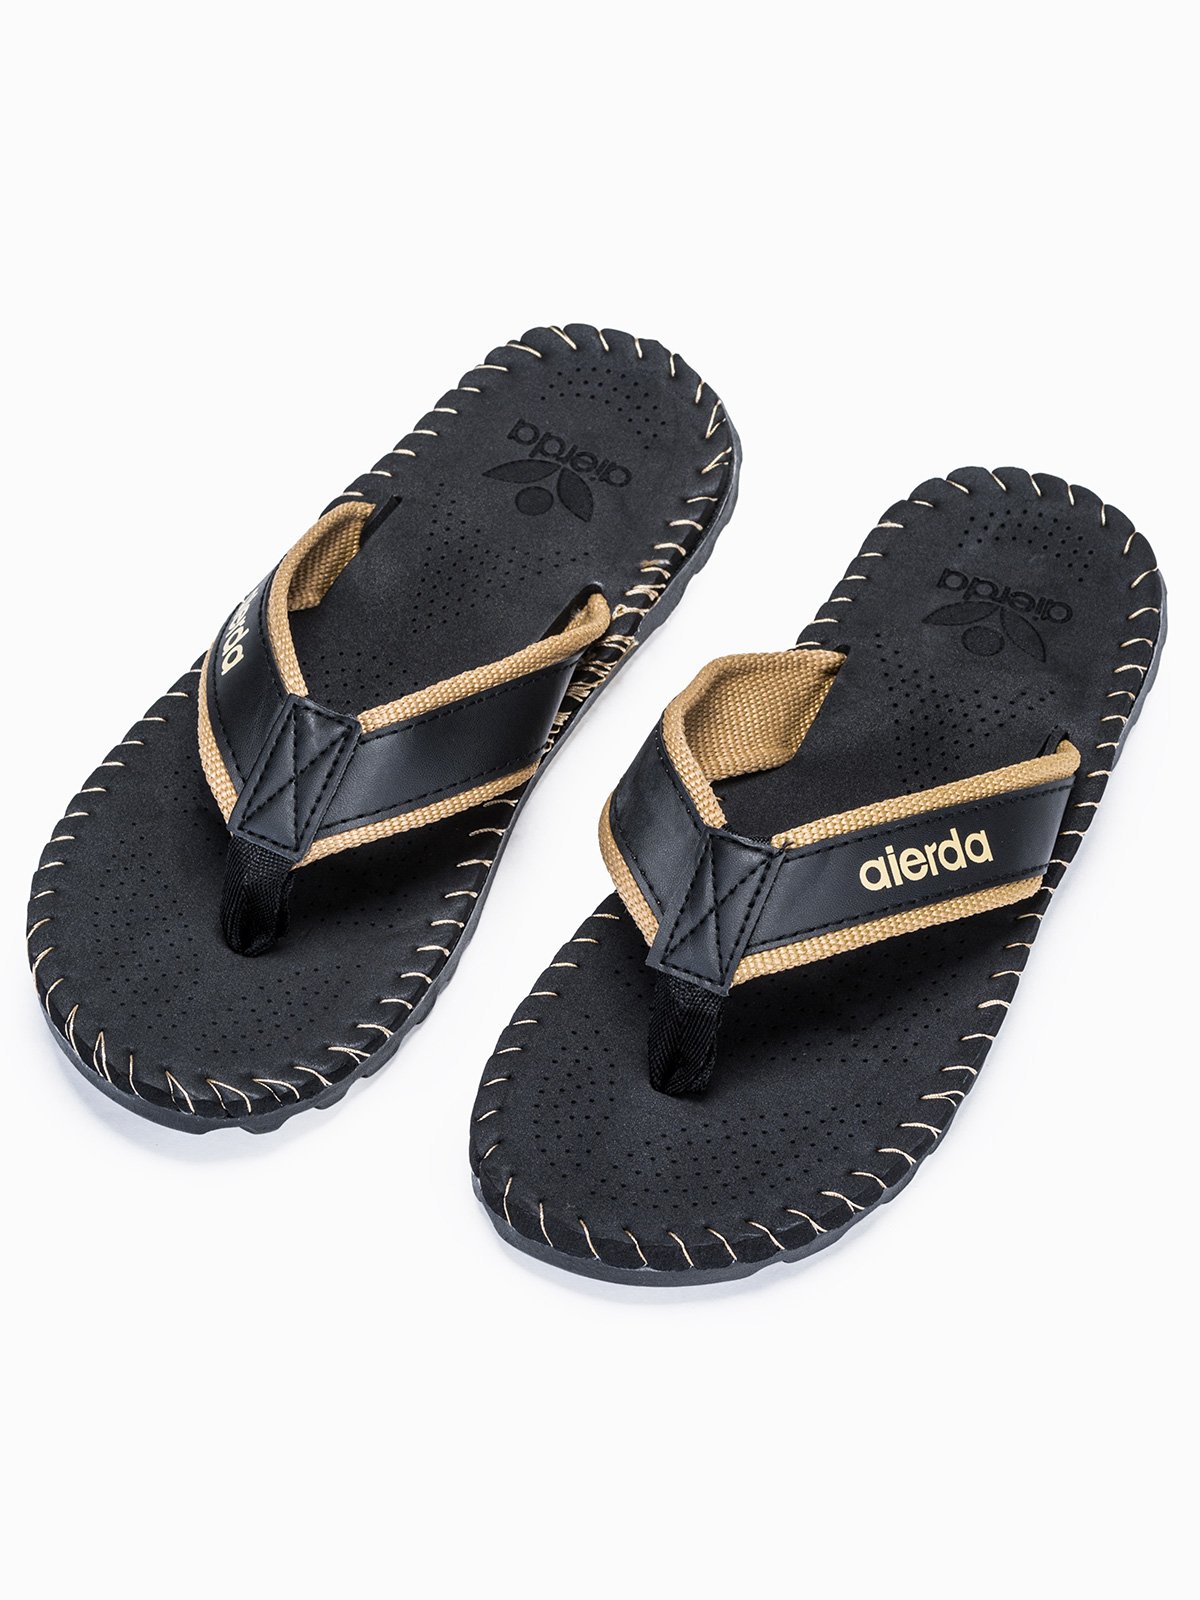 Men's t-bar sandals T296 - black | MODONE wholesale - Clothing For Men